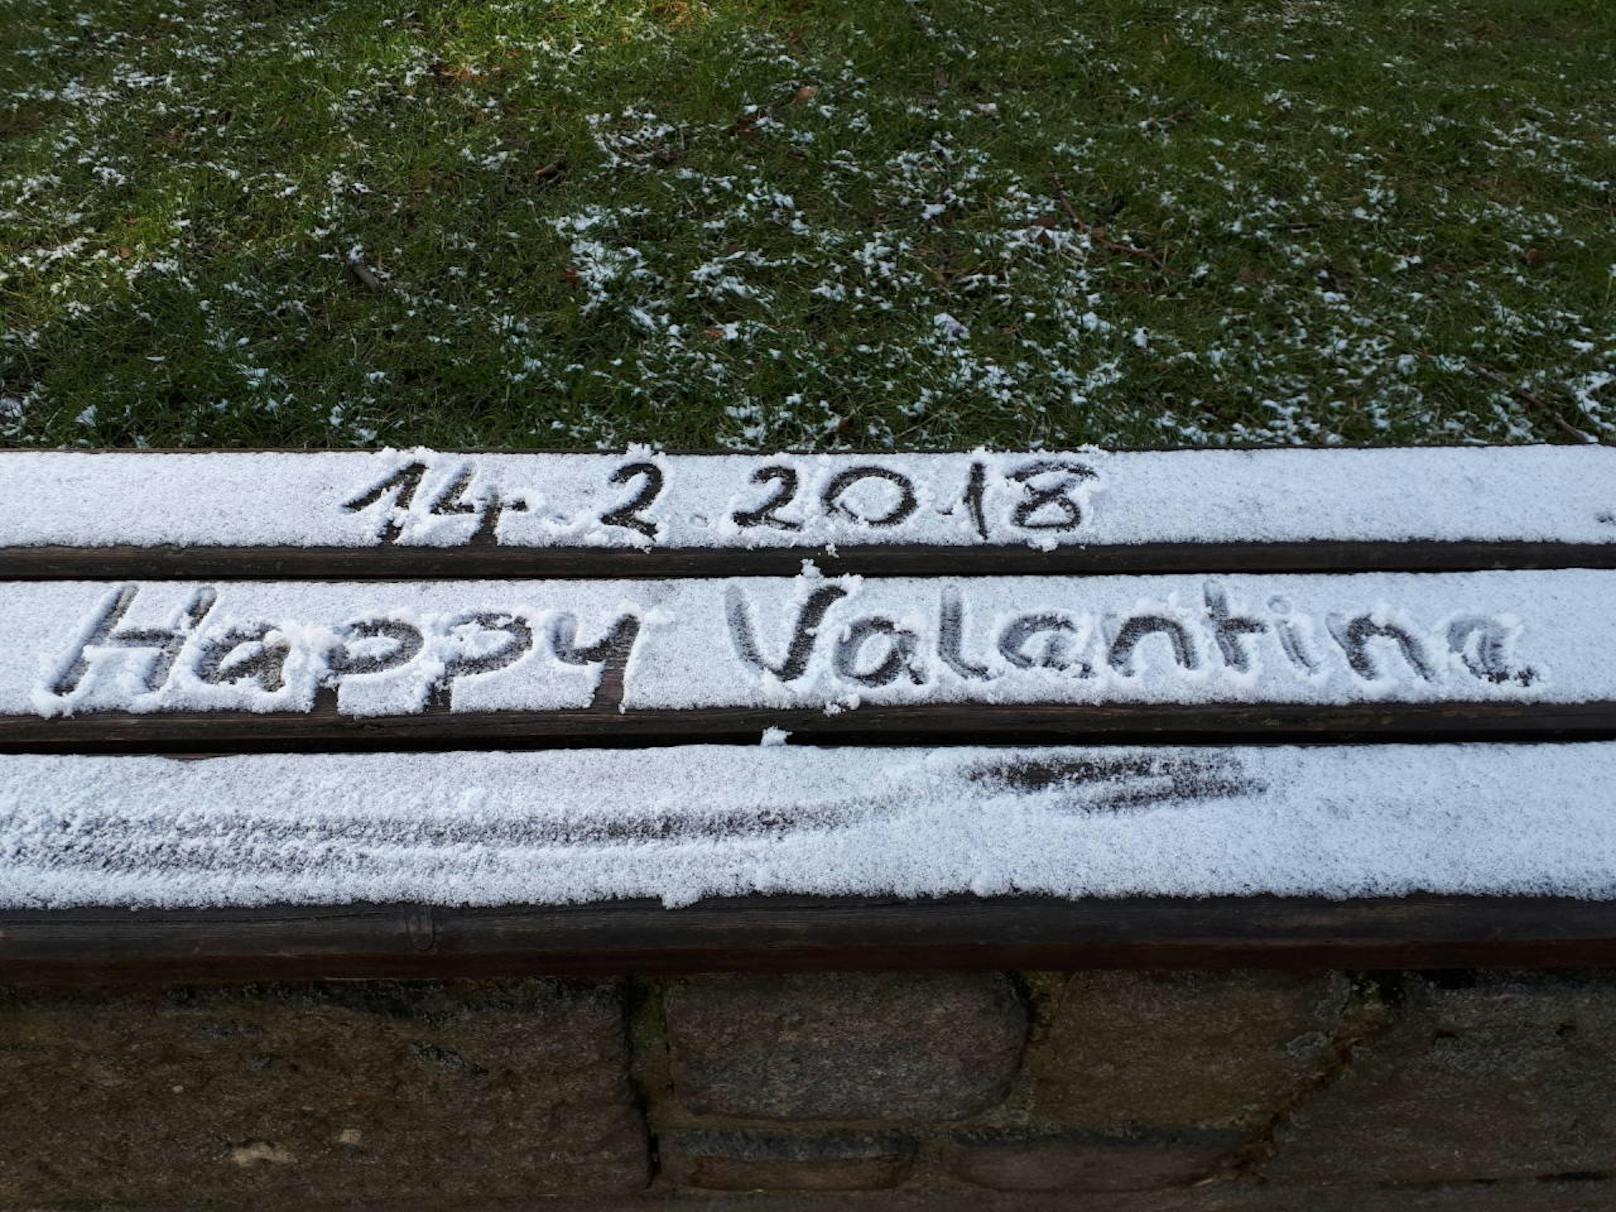 "Wünsche allen Heute-Lesern und natürlich auch dem Heute-Team einen schönen Valentinstag"